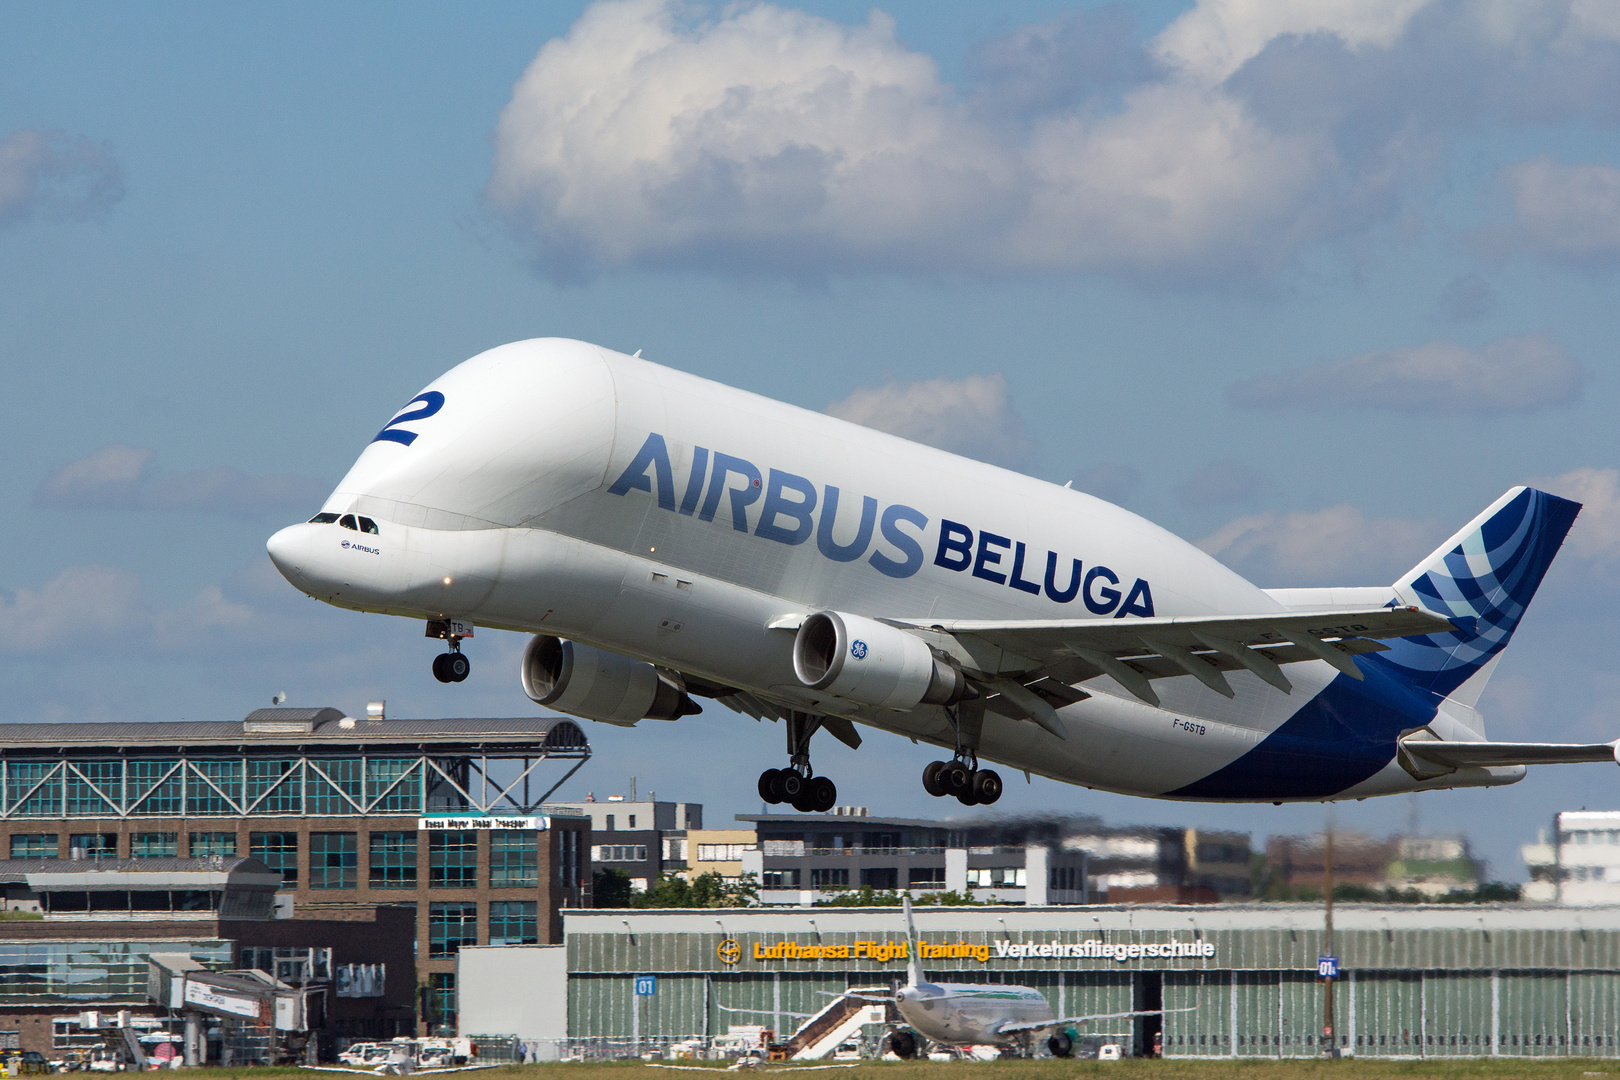 Airbus Beluga 2 in Bremen